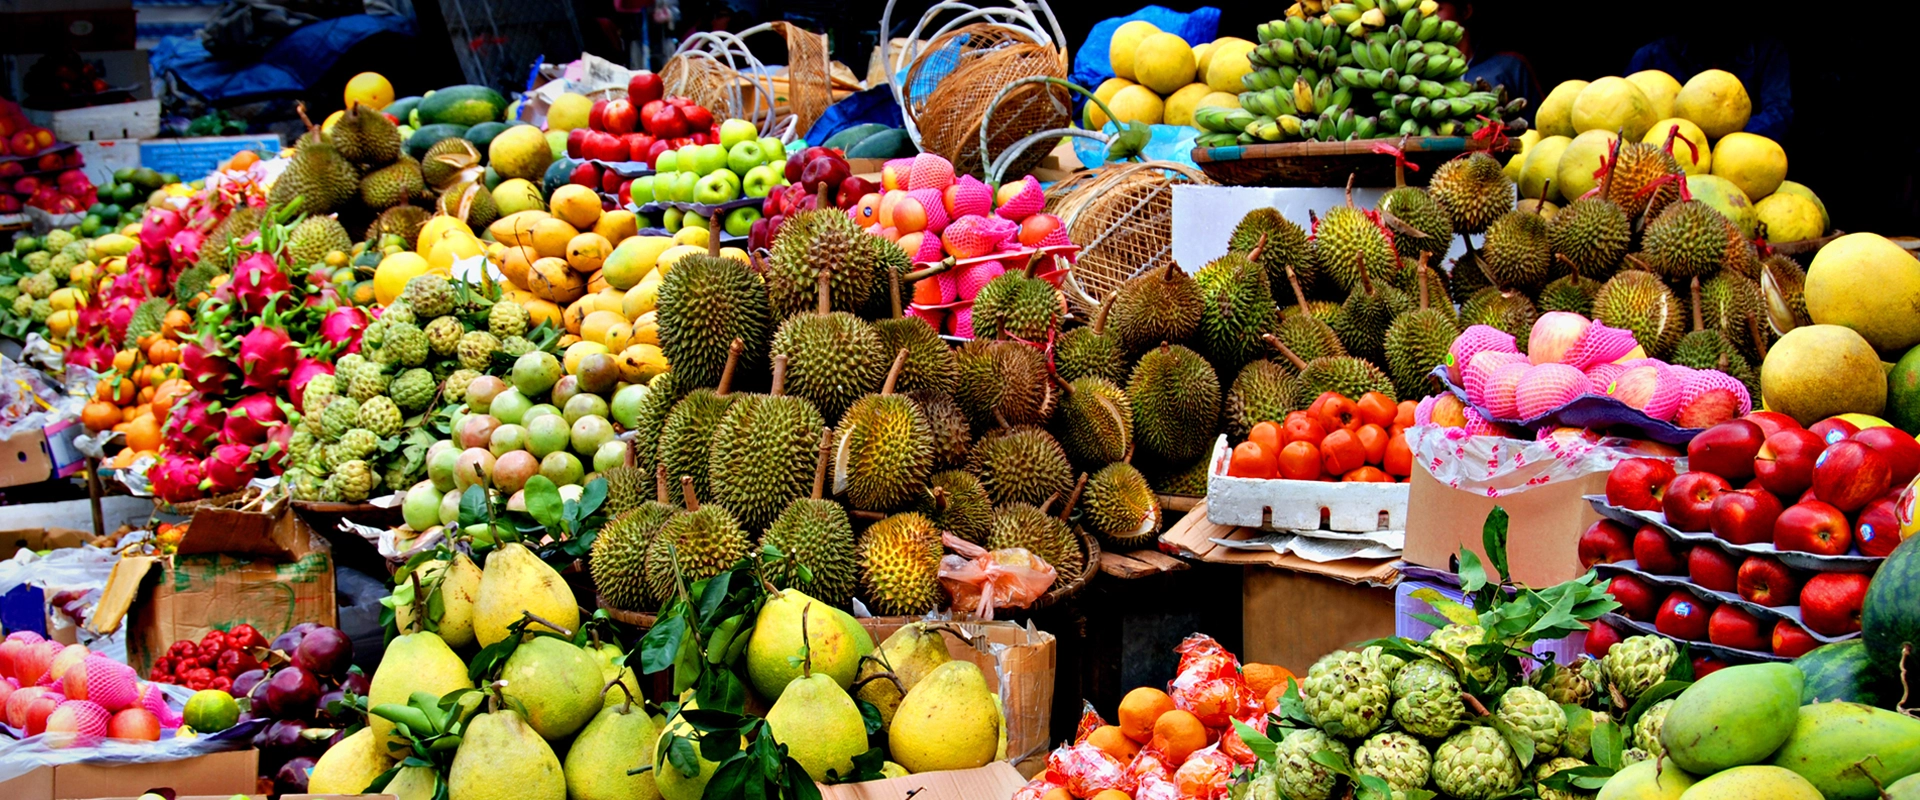 voyage gastronomique vietnam marche fruits